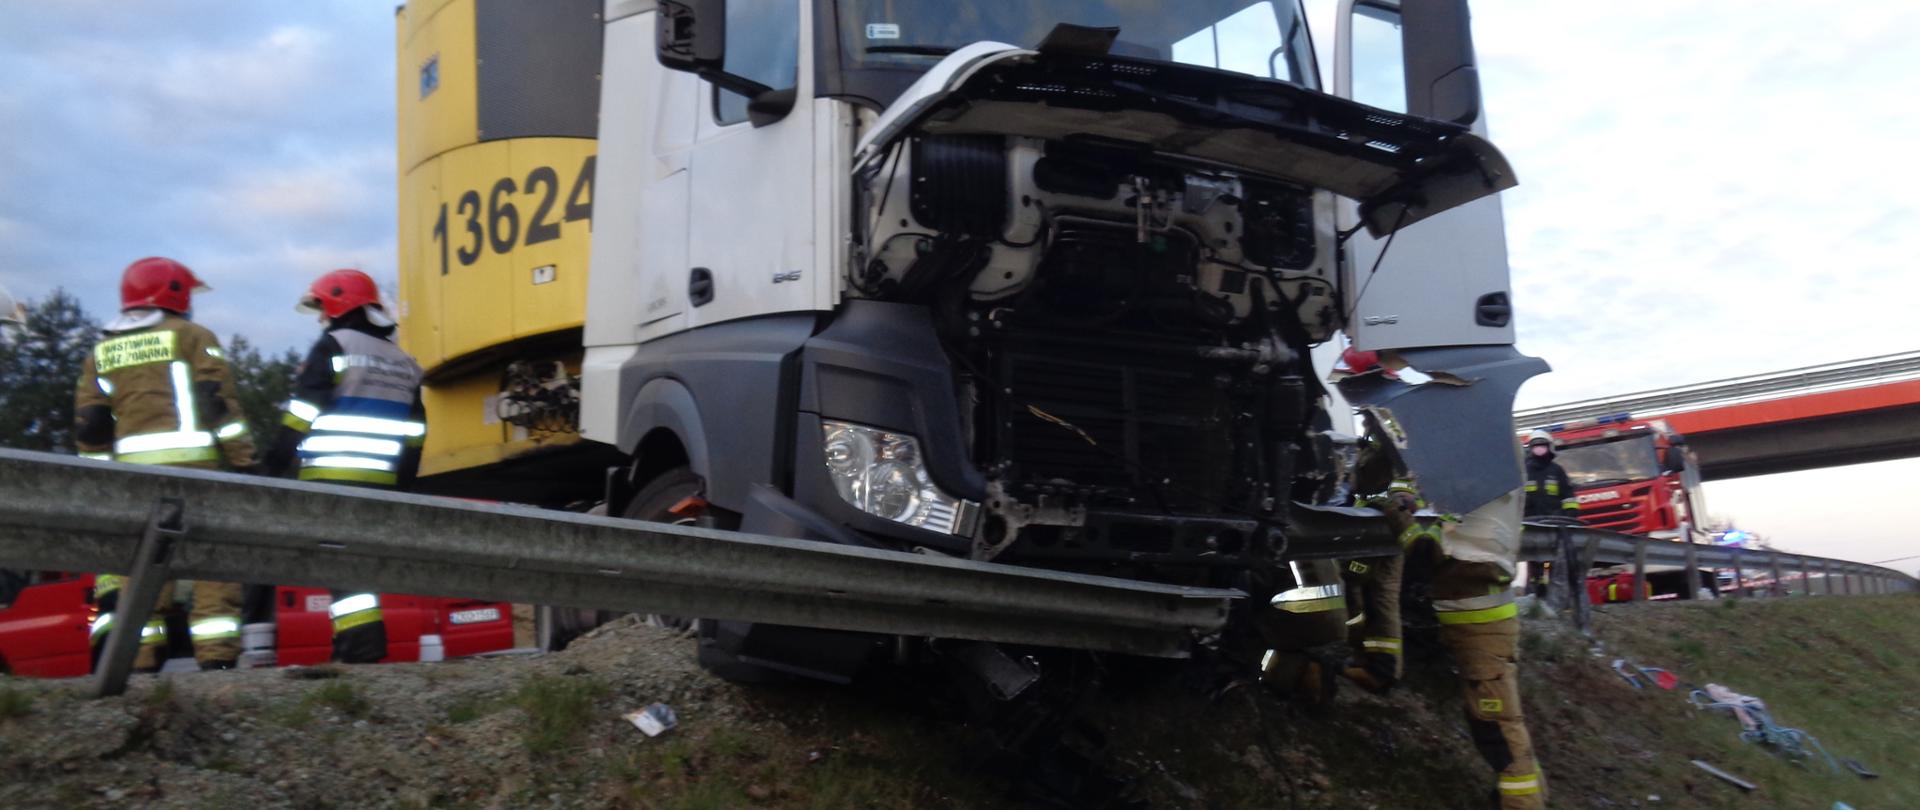 Śmiertelny wypadek w miejscowości Gracz DK6. Wrak pojazdu ciężarowego.